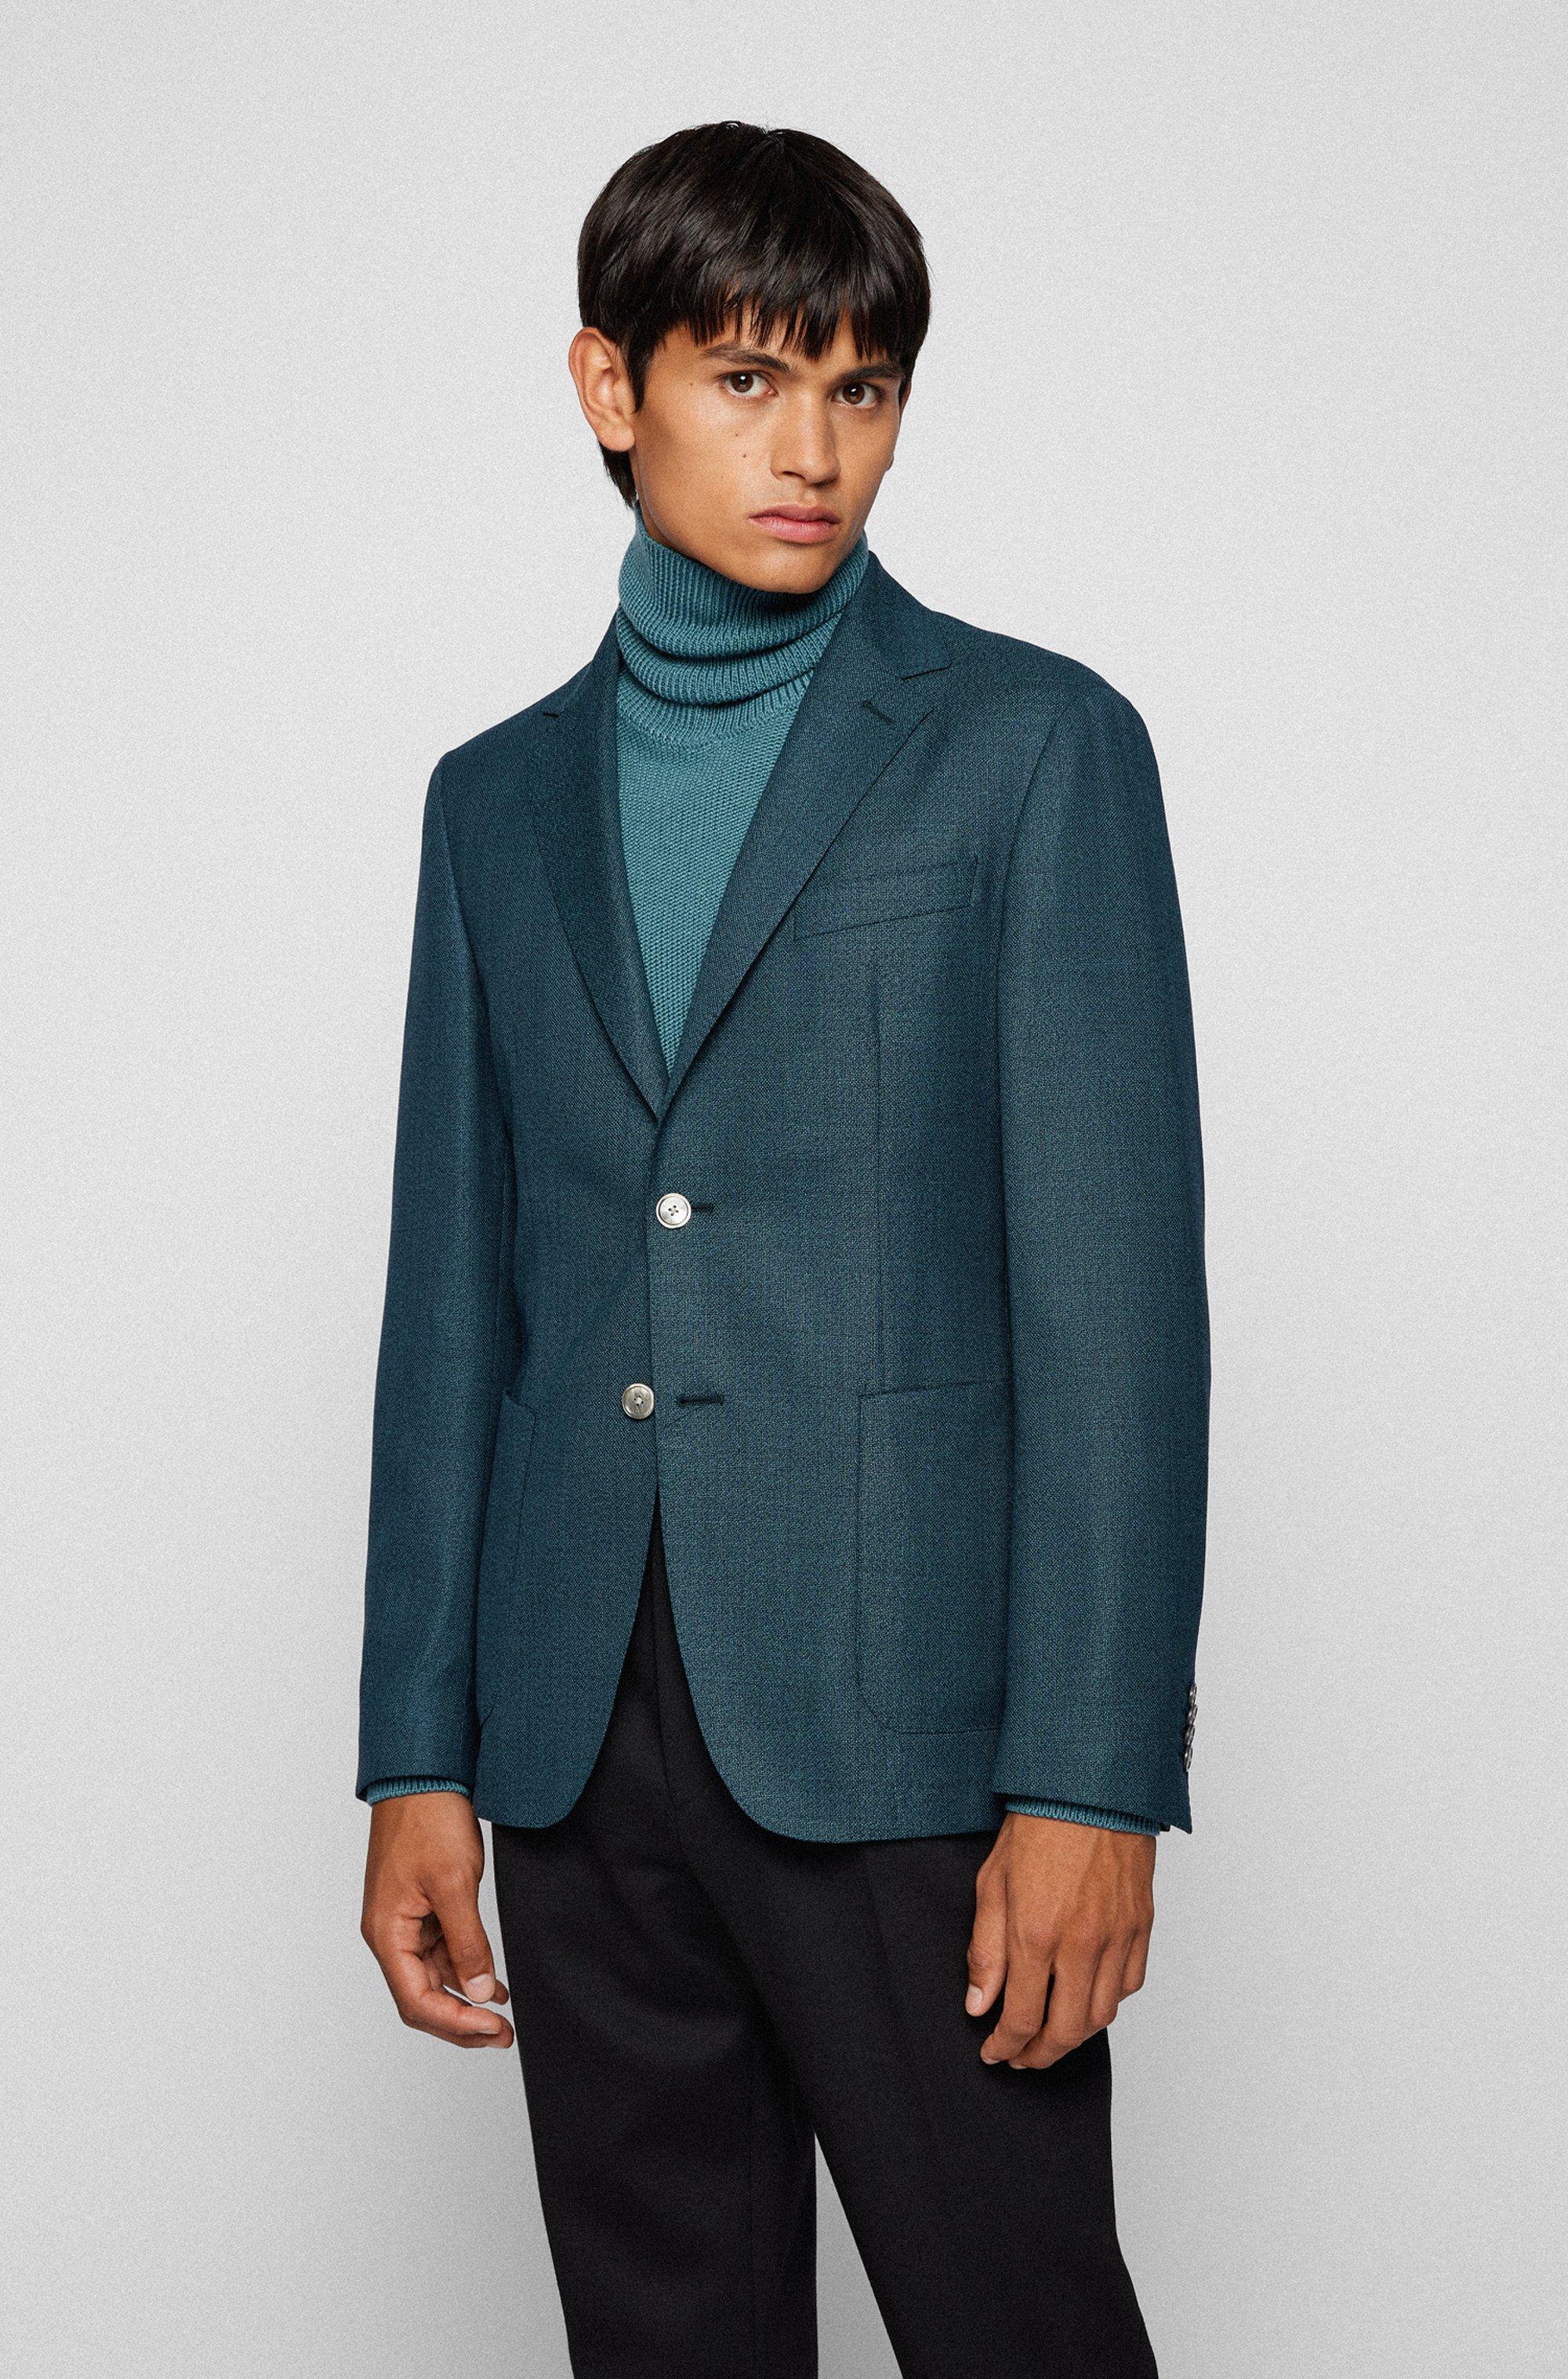 BOSS by HUGO BOSS Slim-fit Jacket In Stretch Virgin Wool in Dark Green ( Green) for Men - Lyst